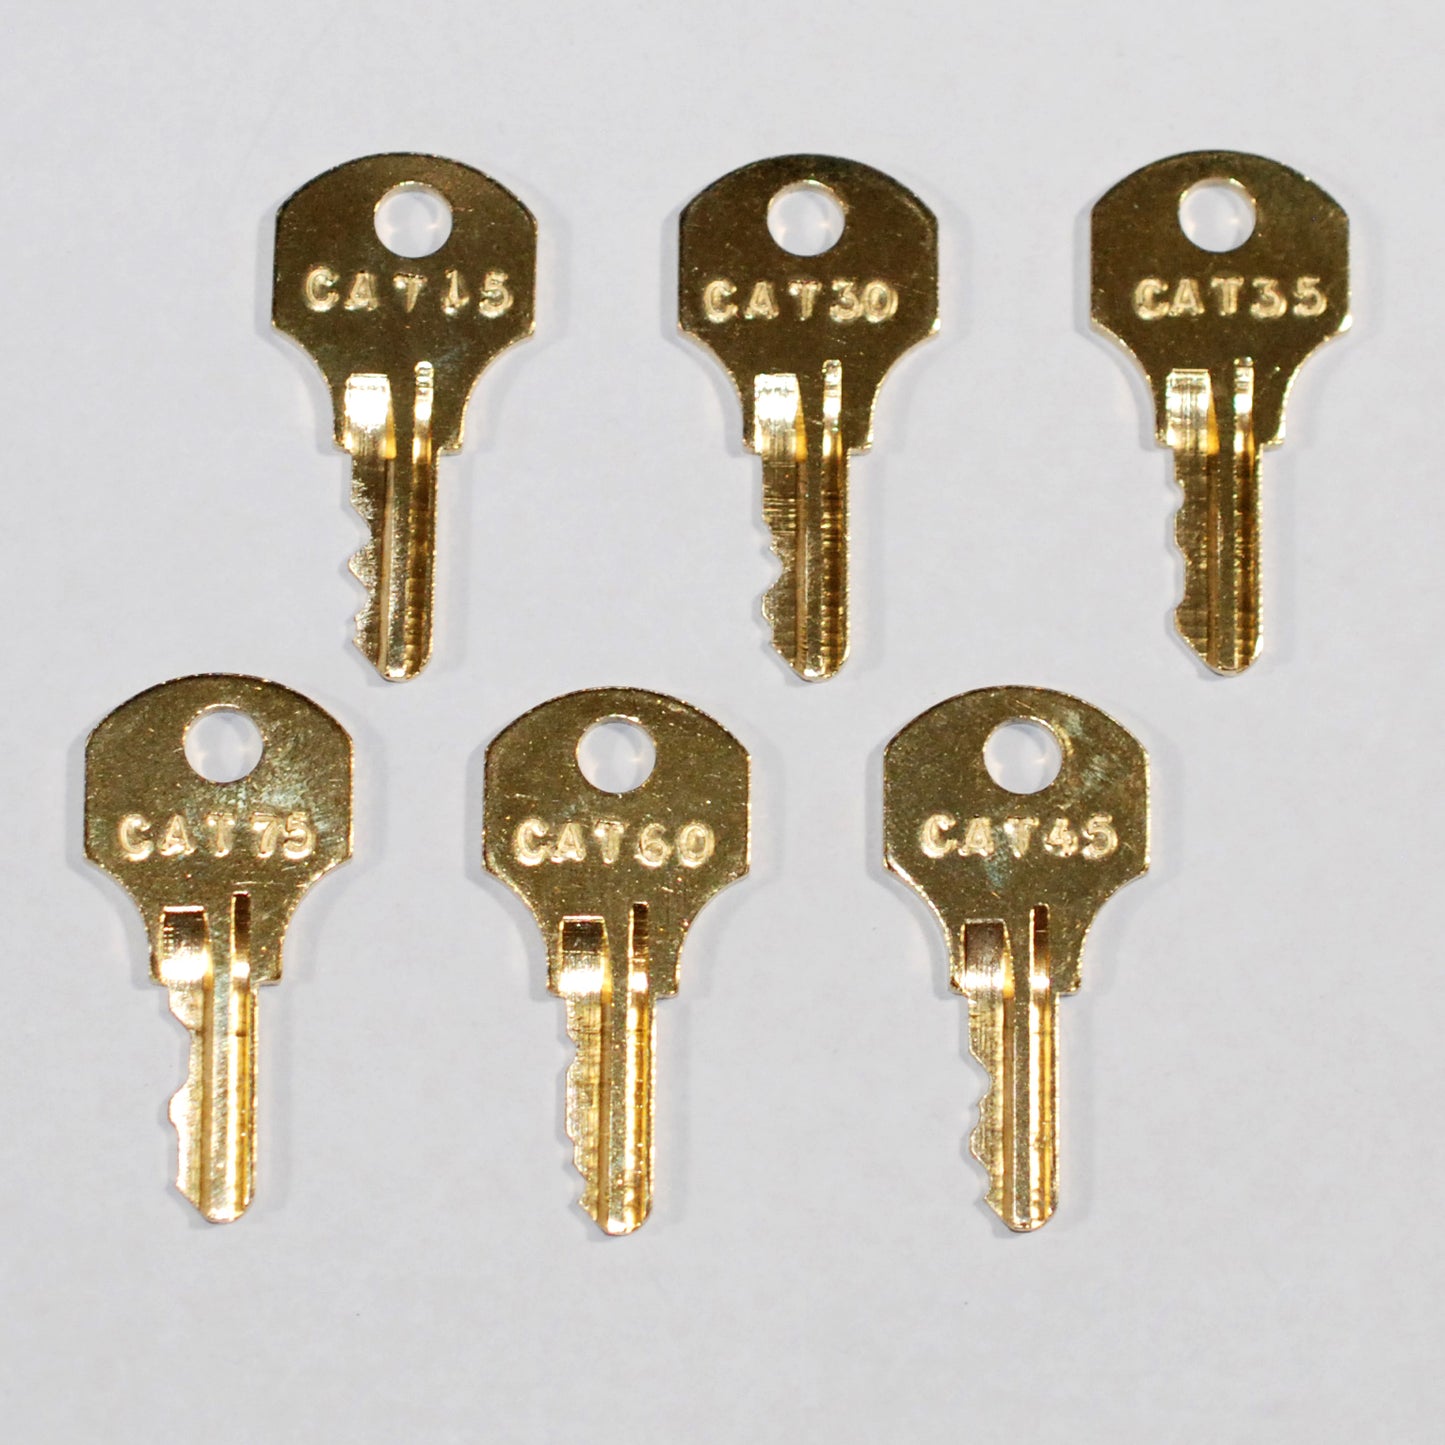 6 CAT Pentesting Key Set ~ CAT15, CAT30, CAT35, CAT45, CAT60, CAT75